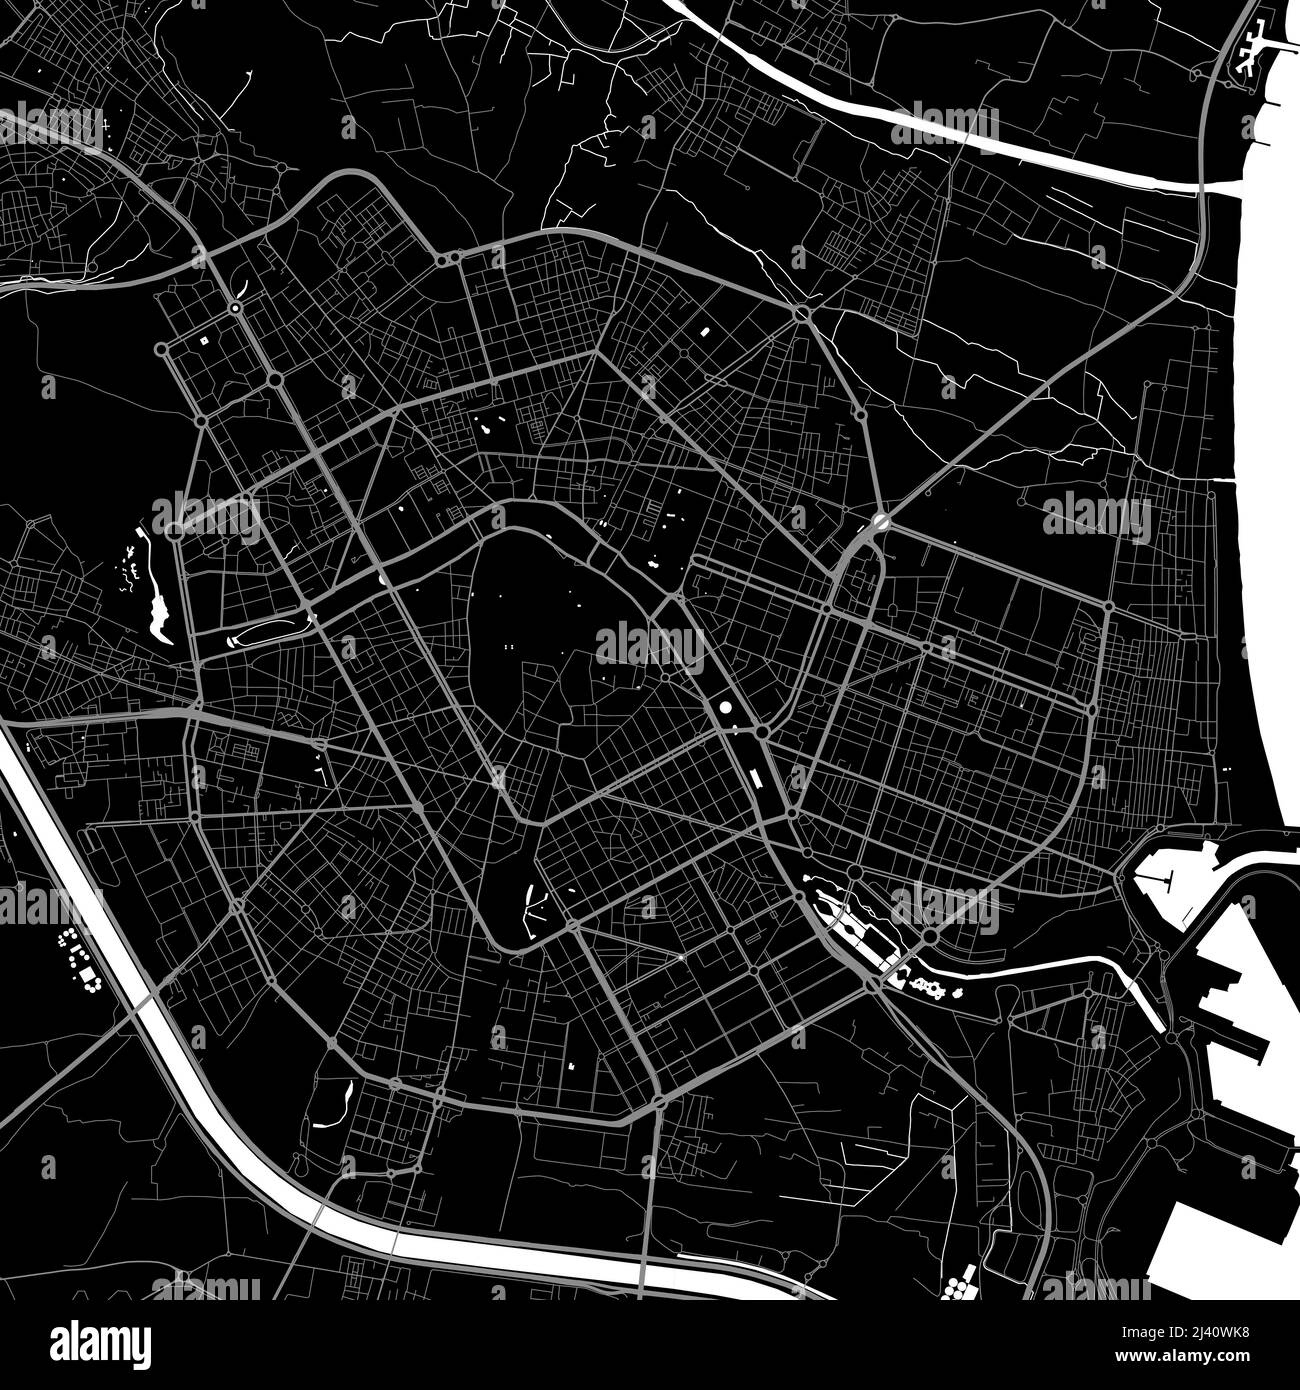 Plan de la ville urbaine de Valence. Illustration vectorielle, affiche graphique Valencia map en niveaux de gris. Carte des rues avec vue sur les routes et la région métropolitaine. Illustration de Vecteur